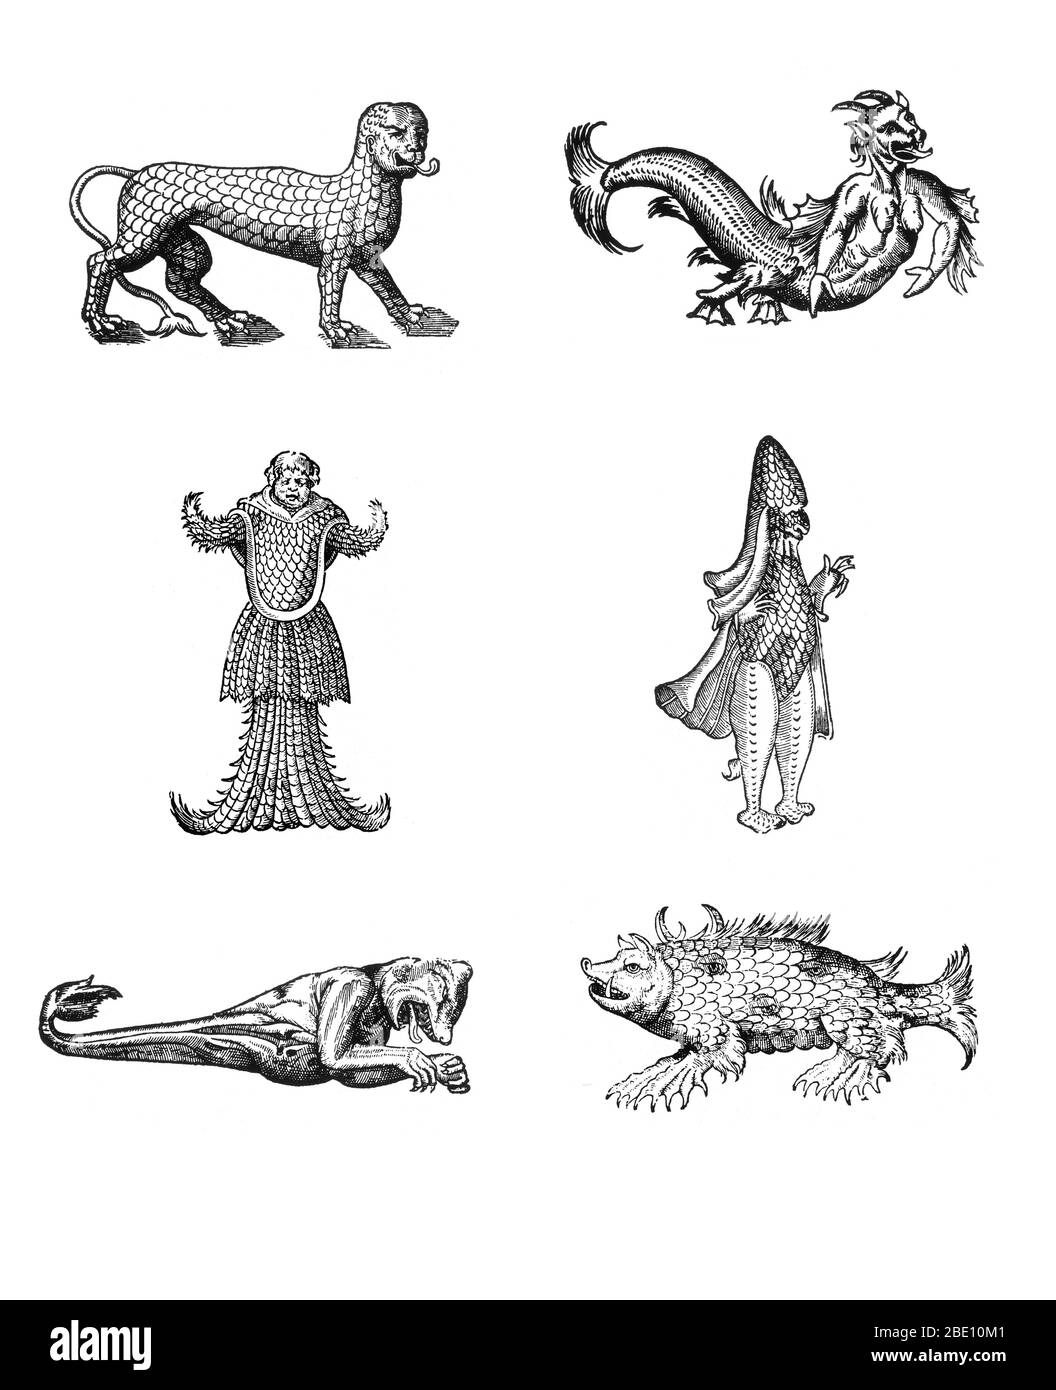 Holzschnitte von Seemonstern aus des Monstres et Prodiges von Ambroise Paré, 1573, im Uhrzeigersinn von oben links: 'ein Löwe mit Schuppen bedeckt', 'eine scheußliche Gestalt eines Seeufels', 'ein Monster, das einem Bischof ähnelt, der in seinen päpstlichen Gewändern gekleidet ist', 'eine Meersau', "Ein Monster mit dem Kopf eines Bären und den Armen eines Affen", "ein Monster mit dem Kopf eines Mönchs, bewaffnet und mit Fischschuppen bedeckt". Des Monstres ist gefüllt mit unbegründeten Berichten von Meeresteufeln, Meersauen und monströsen Tieren mit menschlichen Gesichtern. Mit seiner umfangreichen Diskussion über Reproduktion und Illustrationen von Geburt Stockfoto